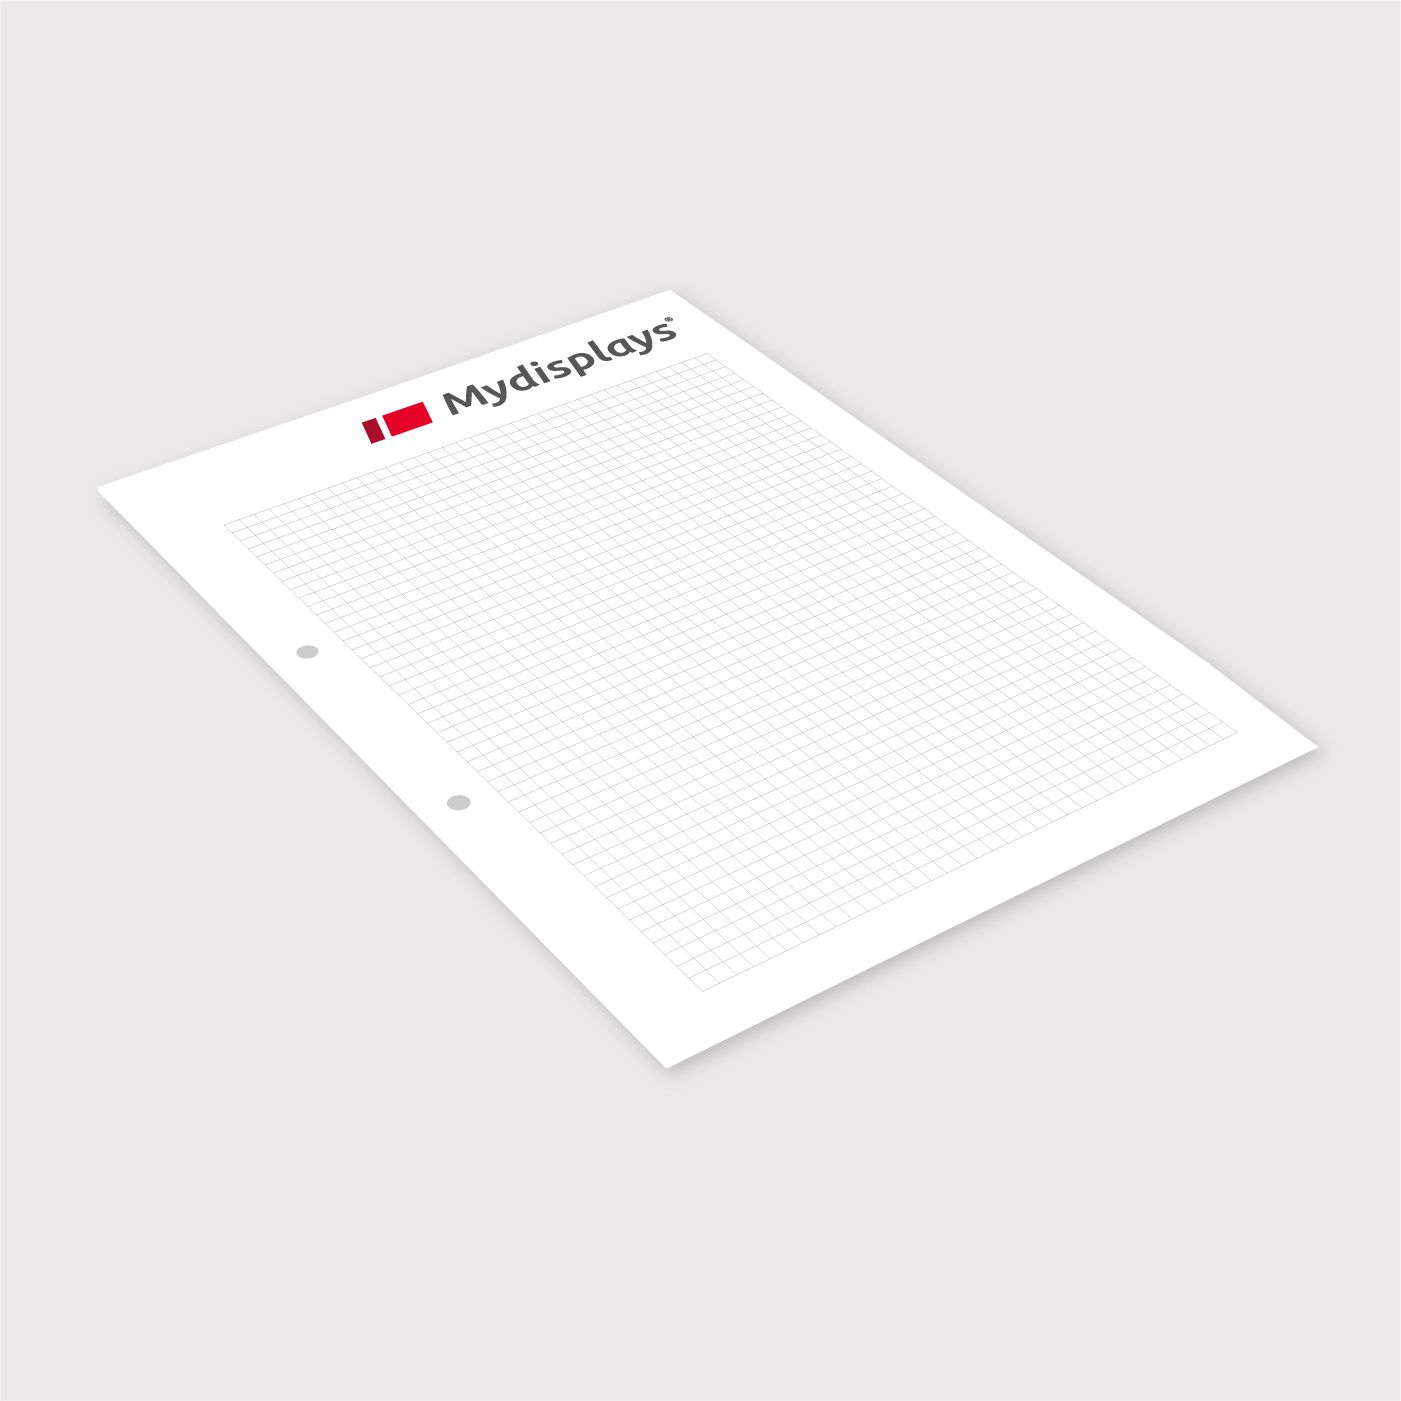 Blöcke im Digitaldruck - ideal bei kleinen Auflagen für Meetings